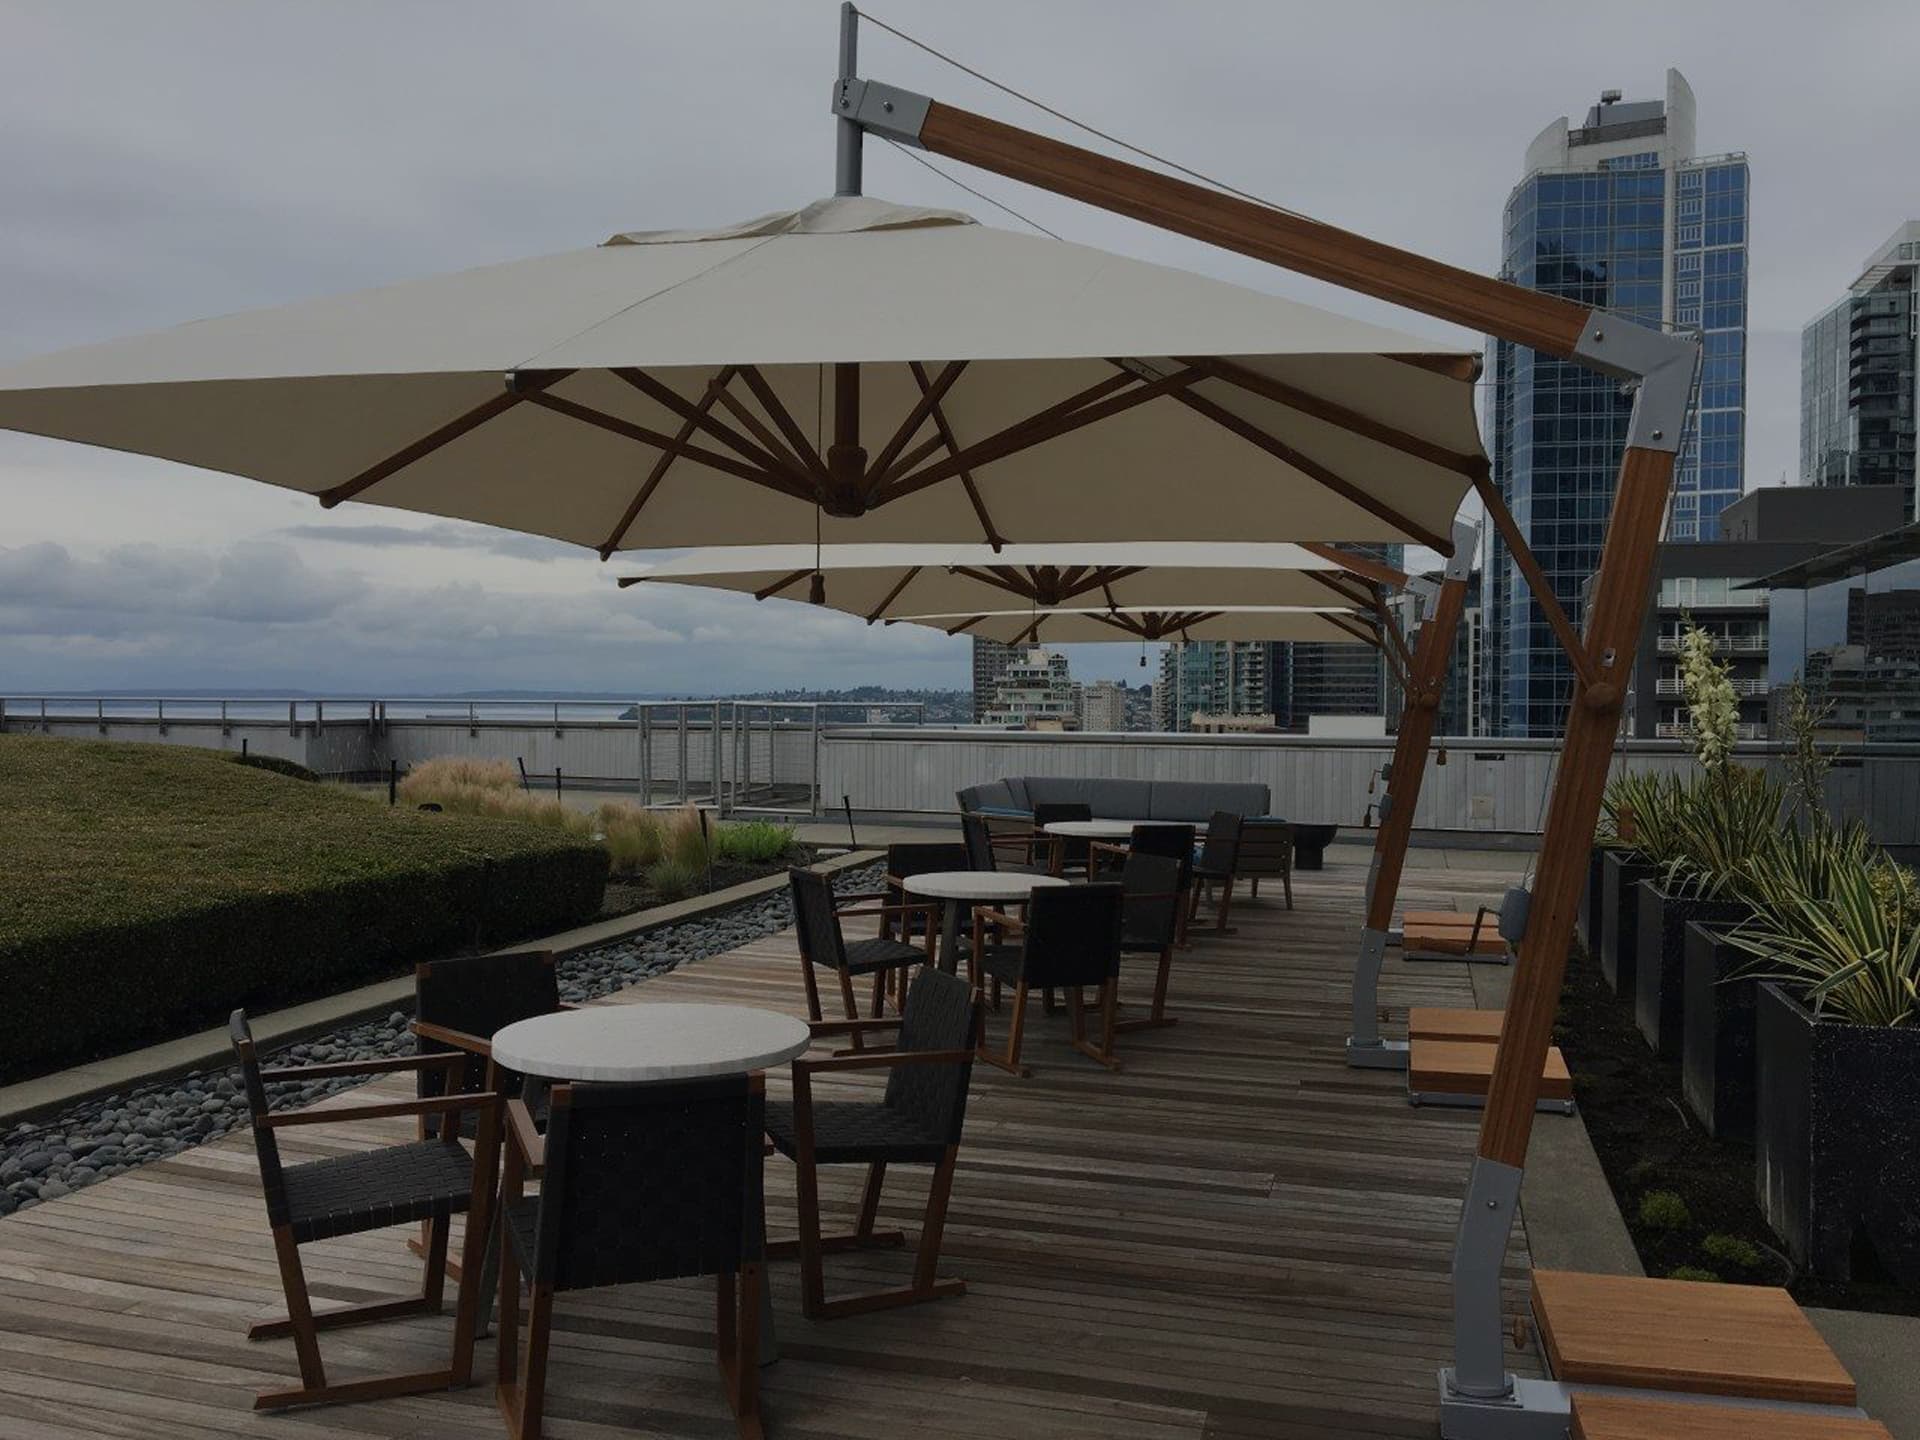 cantilever parasol for restaurant